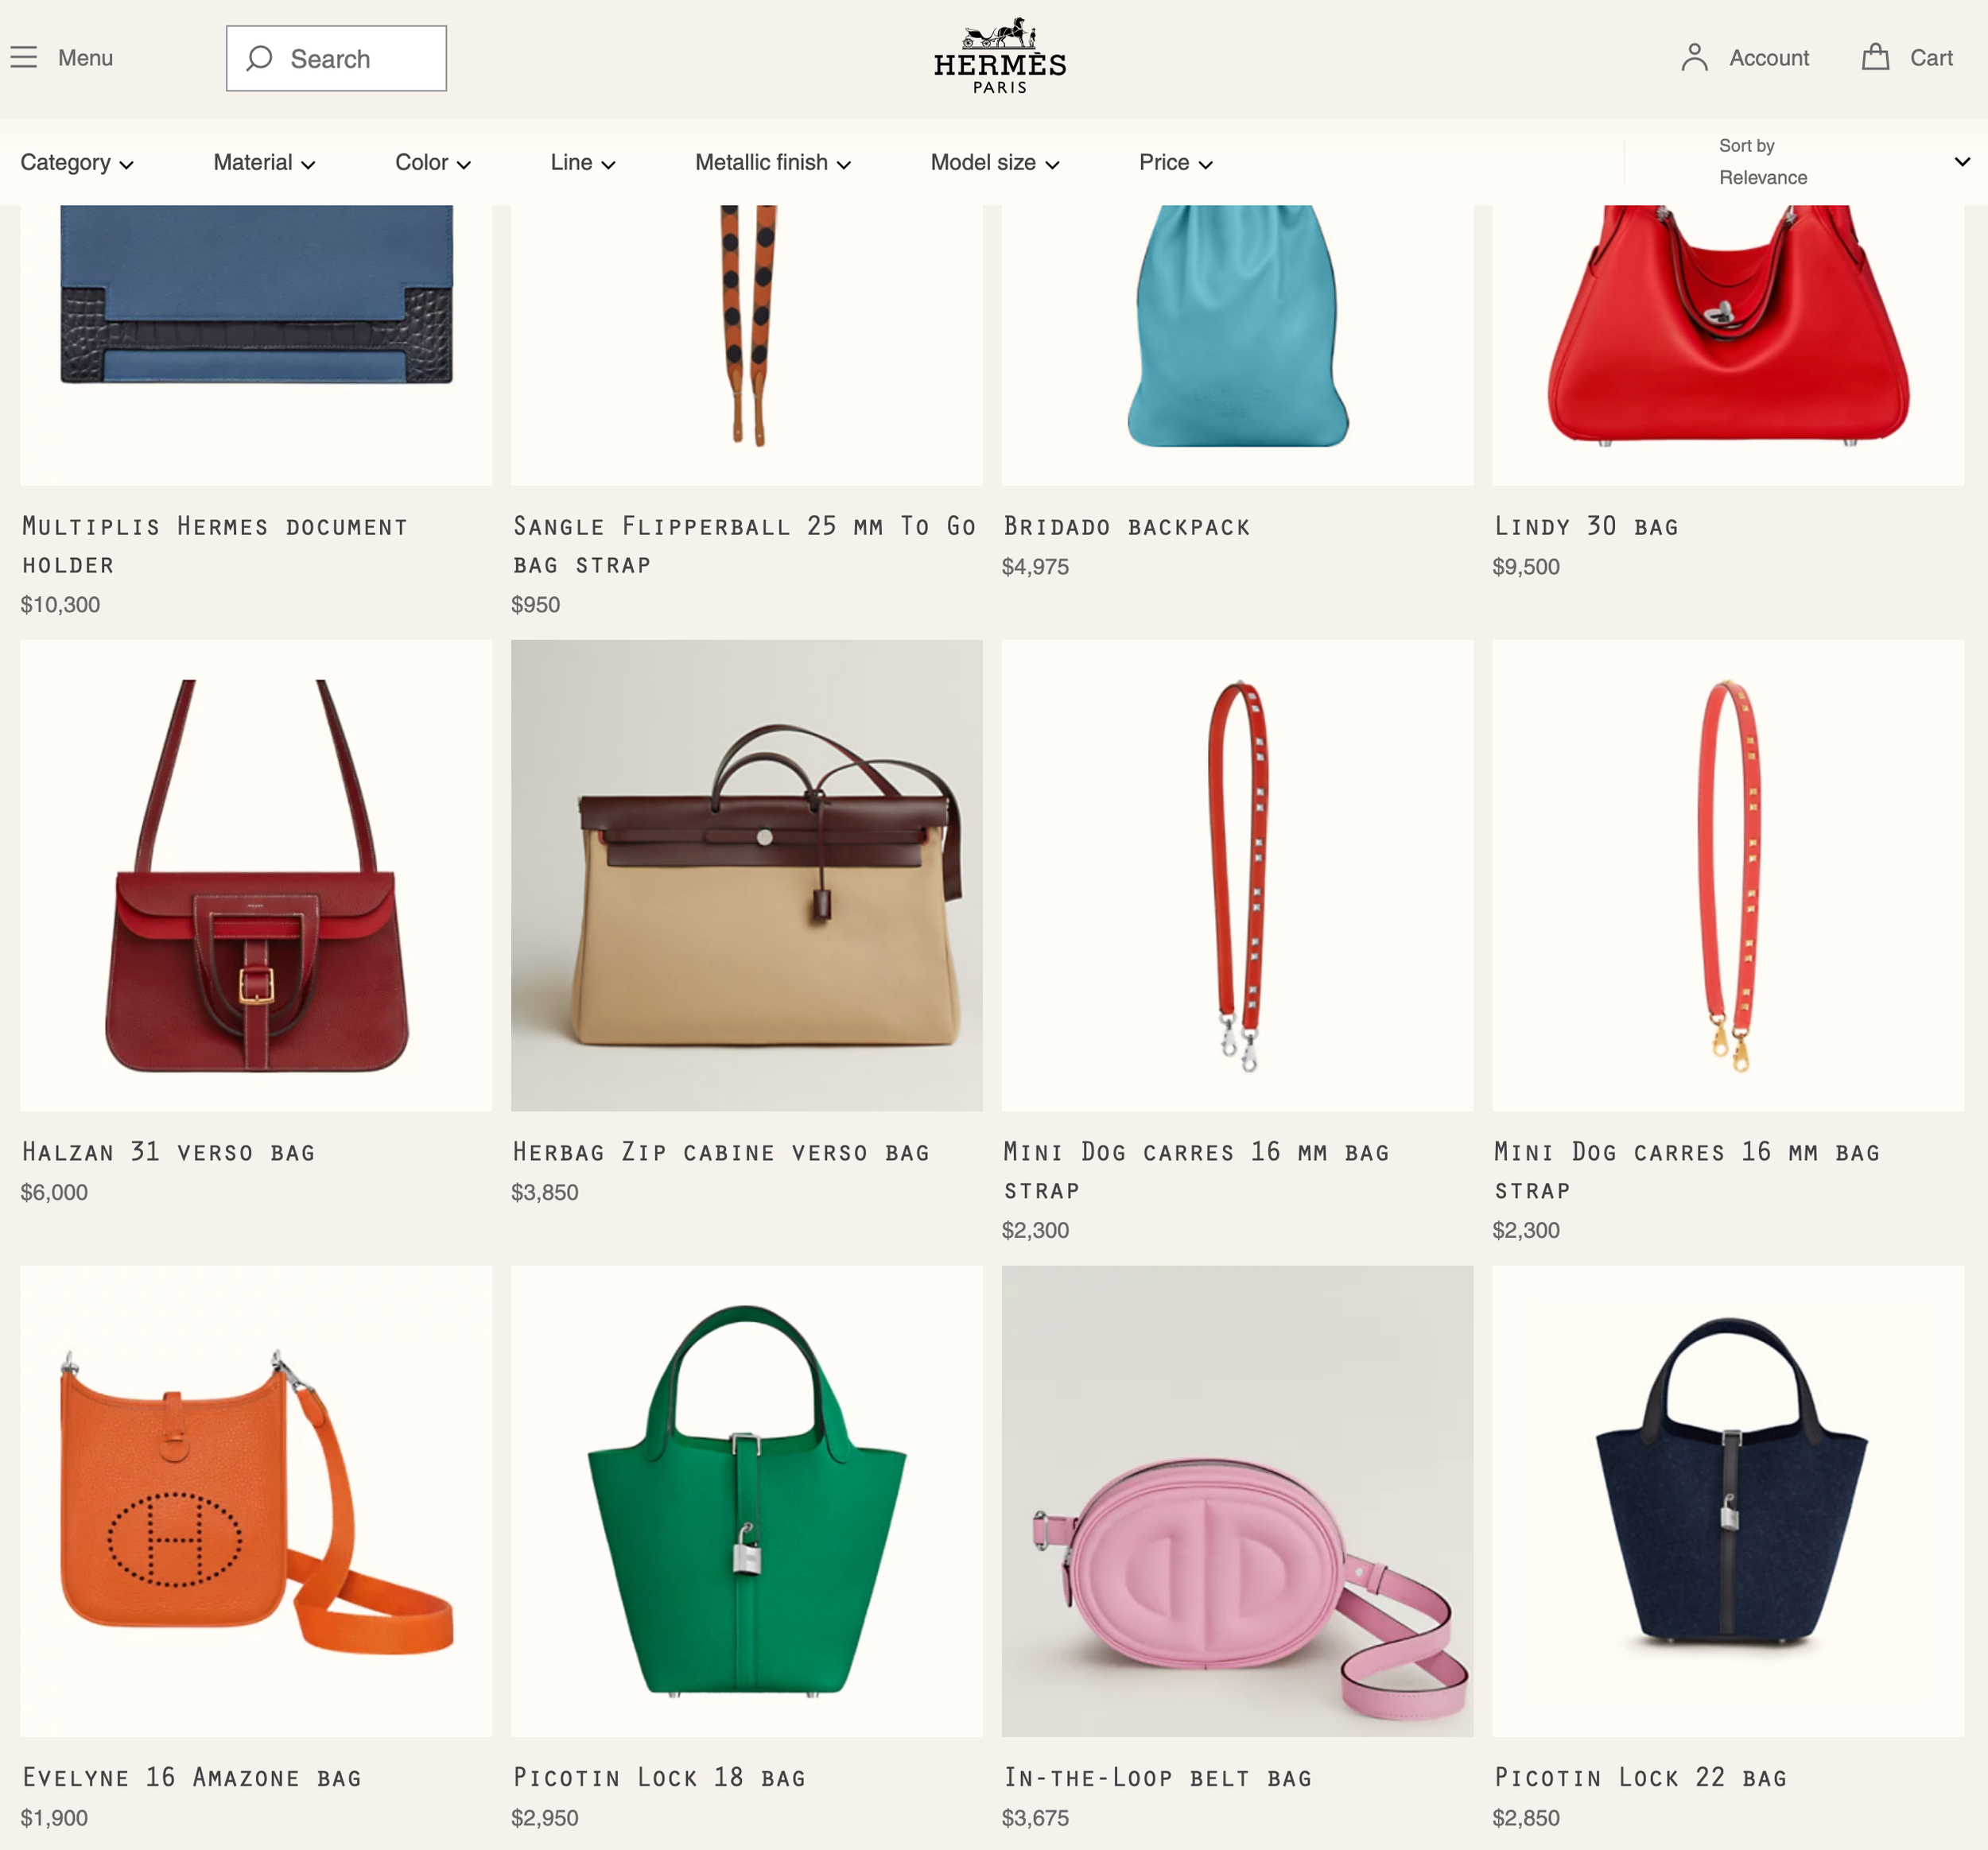 Types of Hermes bags | Hermes bags, Purses and handbags, Hermes handbags